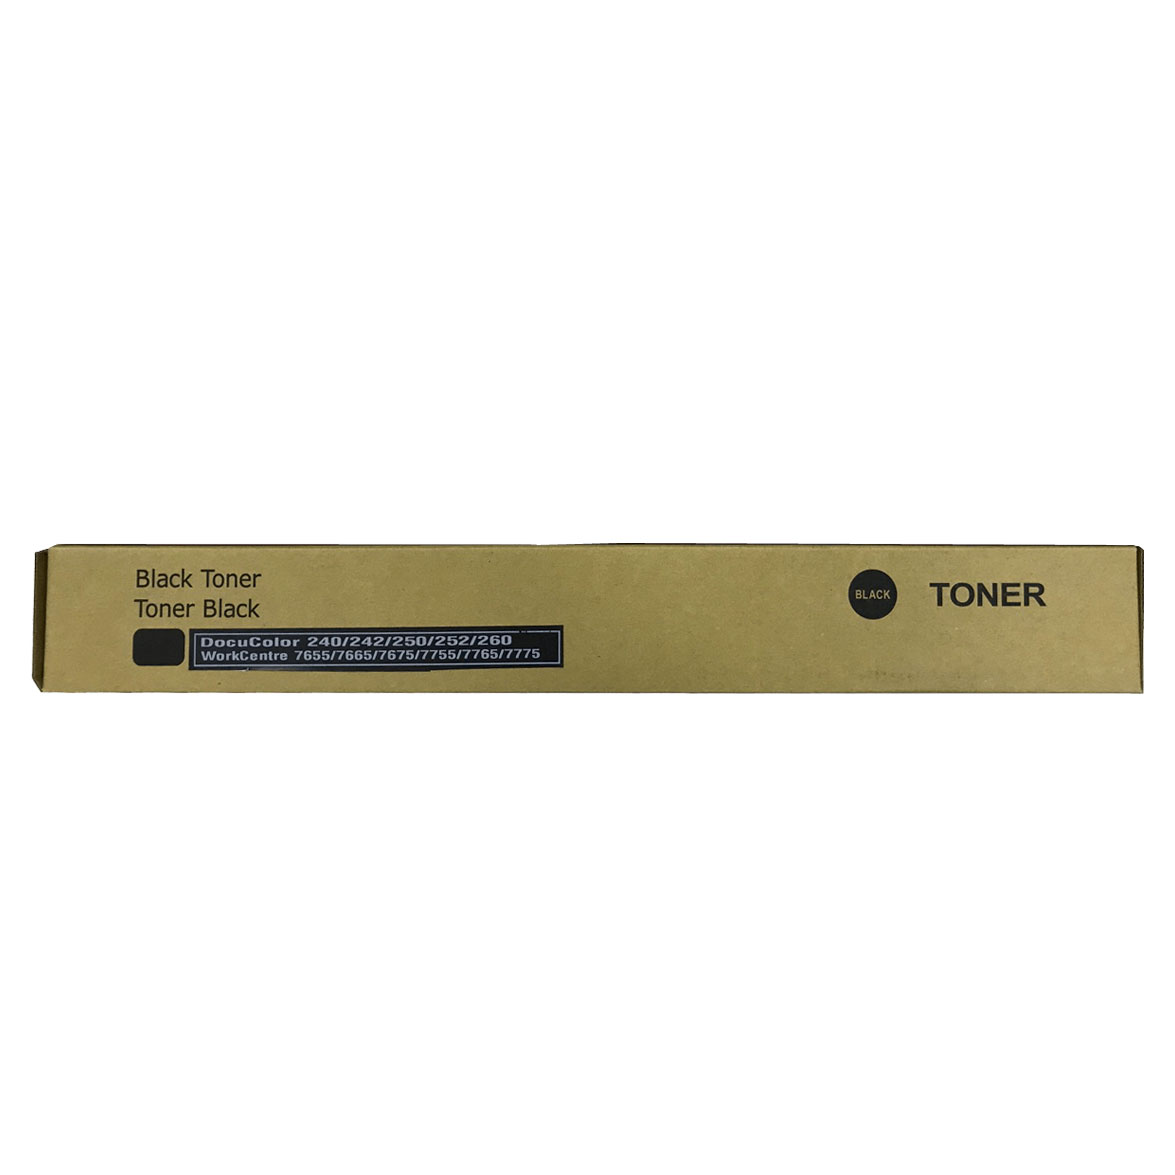 Тонер картридж черный (Black) для XEROX DC 240/242/250/252/260 (006R01449, 006R01223). Фото №2